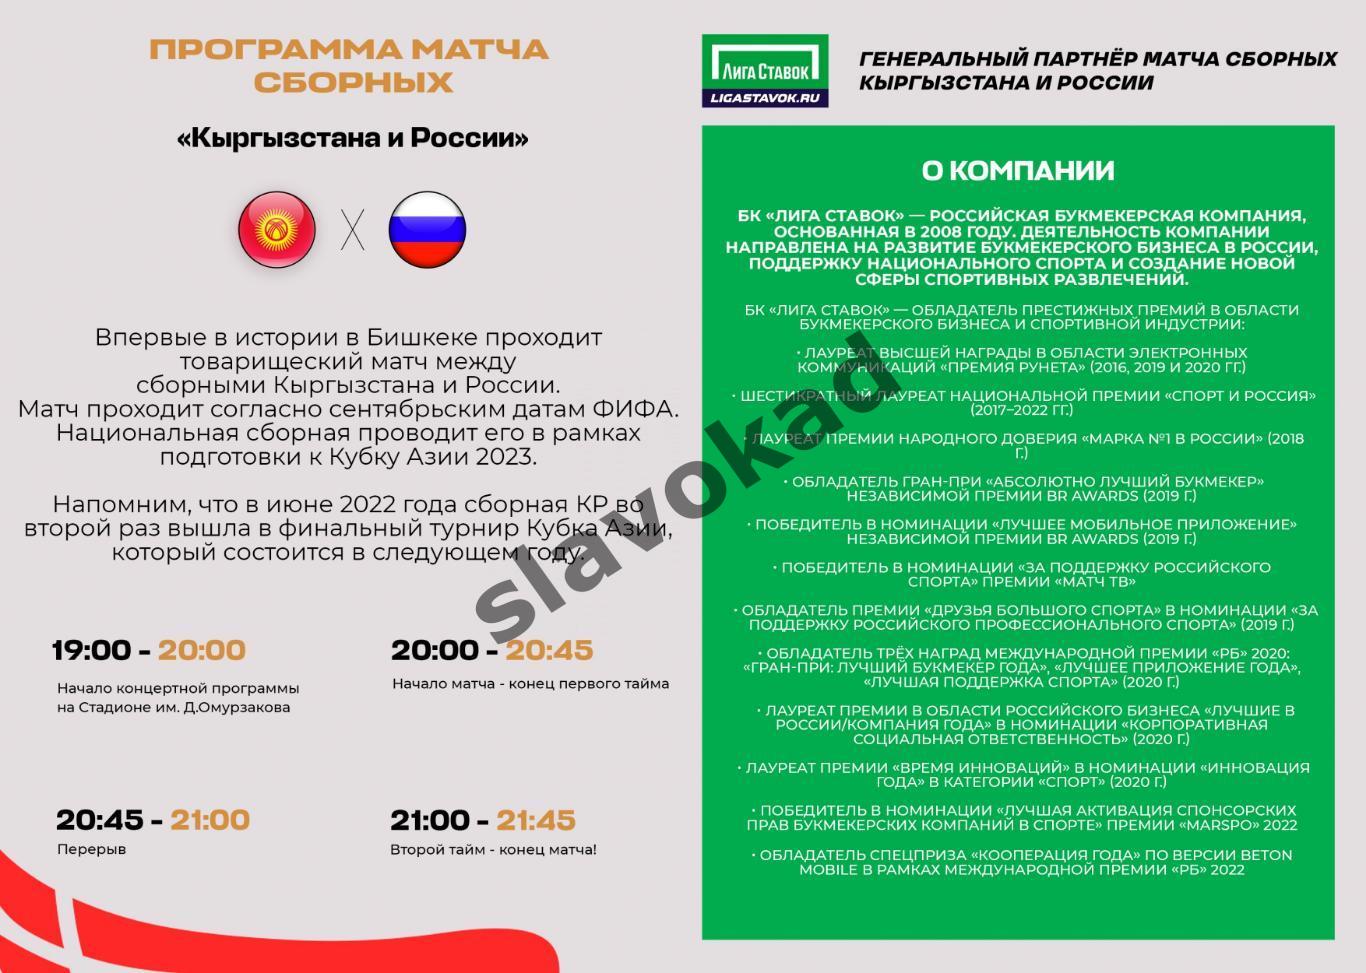 Киргизия- Россия 24.09.2022 - официальная программа 1